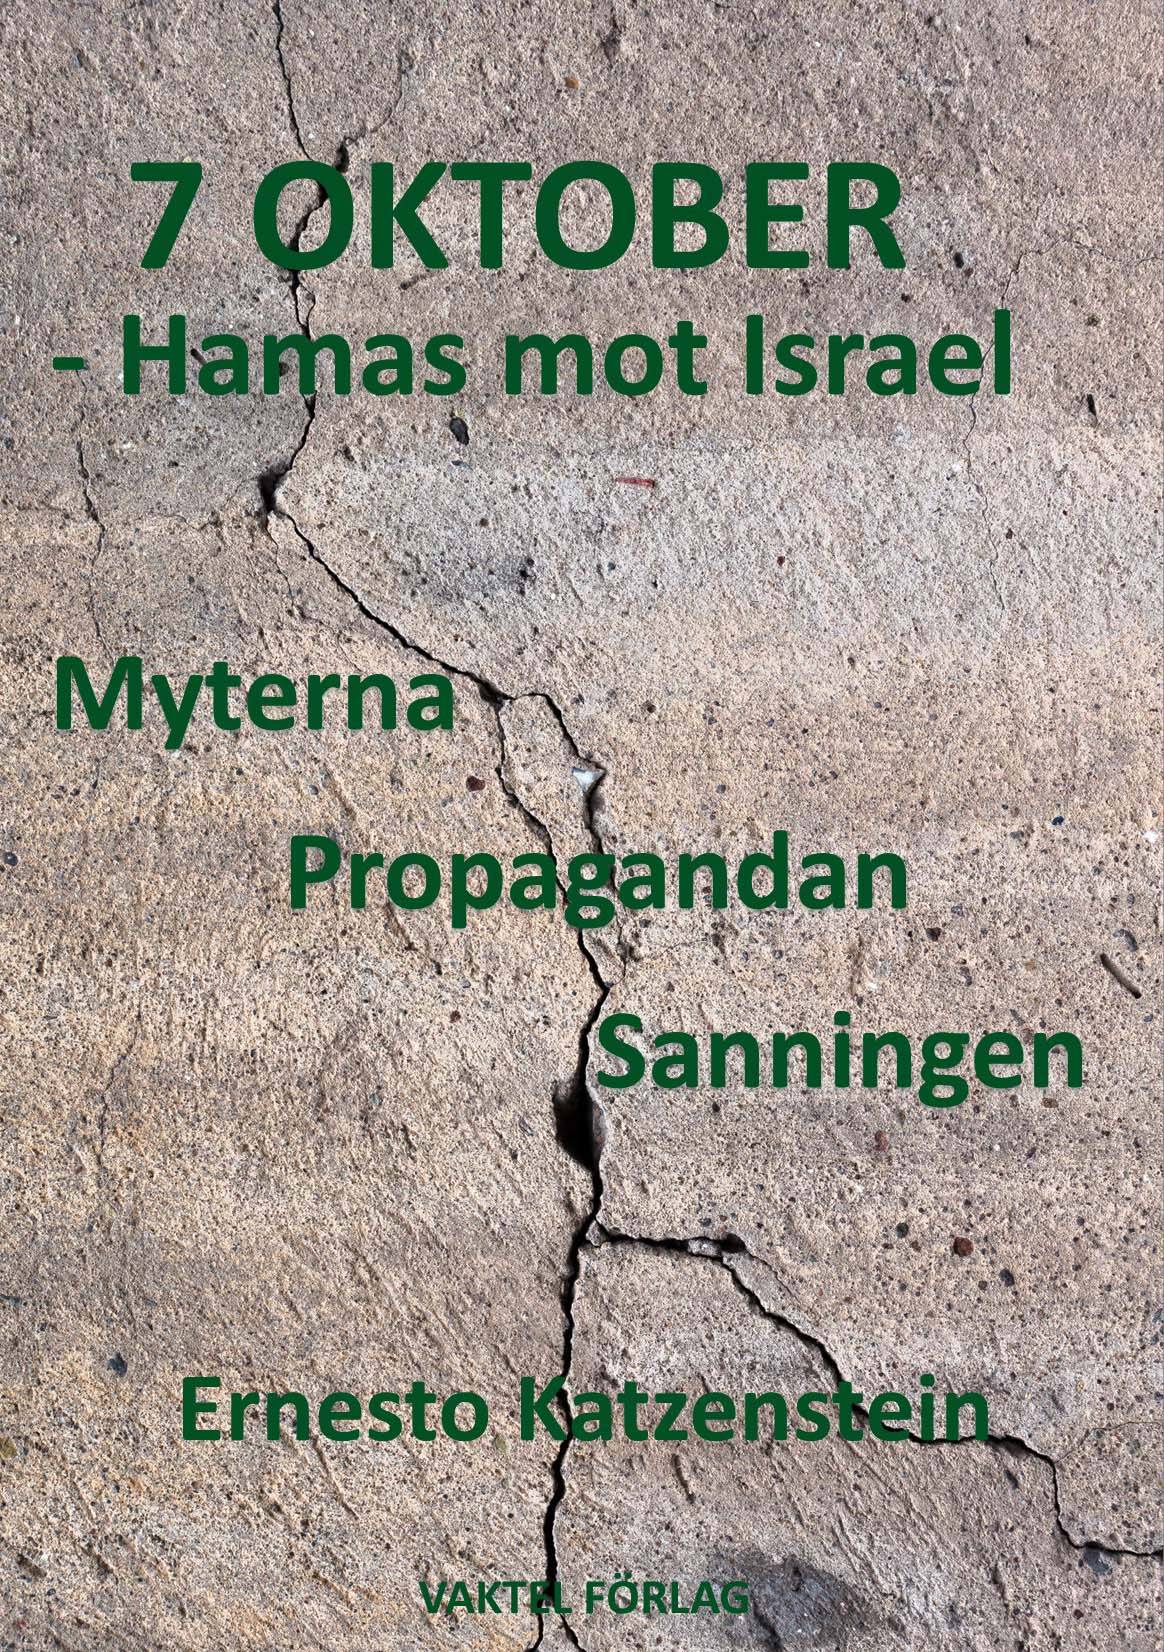 7 OKTOBER – Hamas mot Israel : Myterna, Propagandan, Sanningen